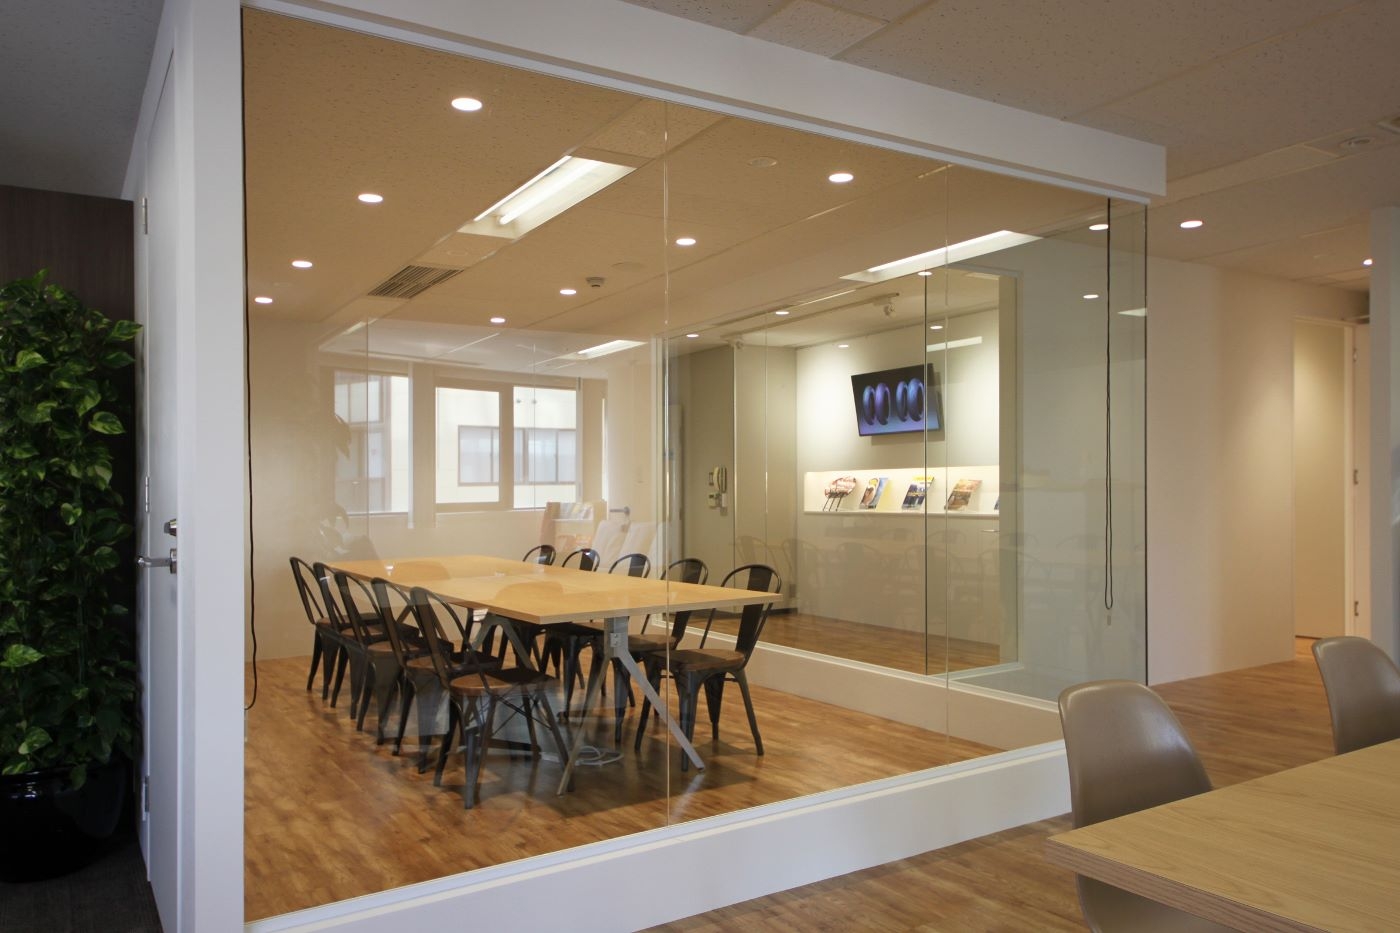 オフィスデザイン実績～クリエイティブのシズル感(臨場感)を体現できるオフィス空間